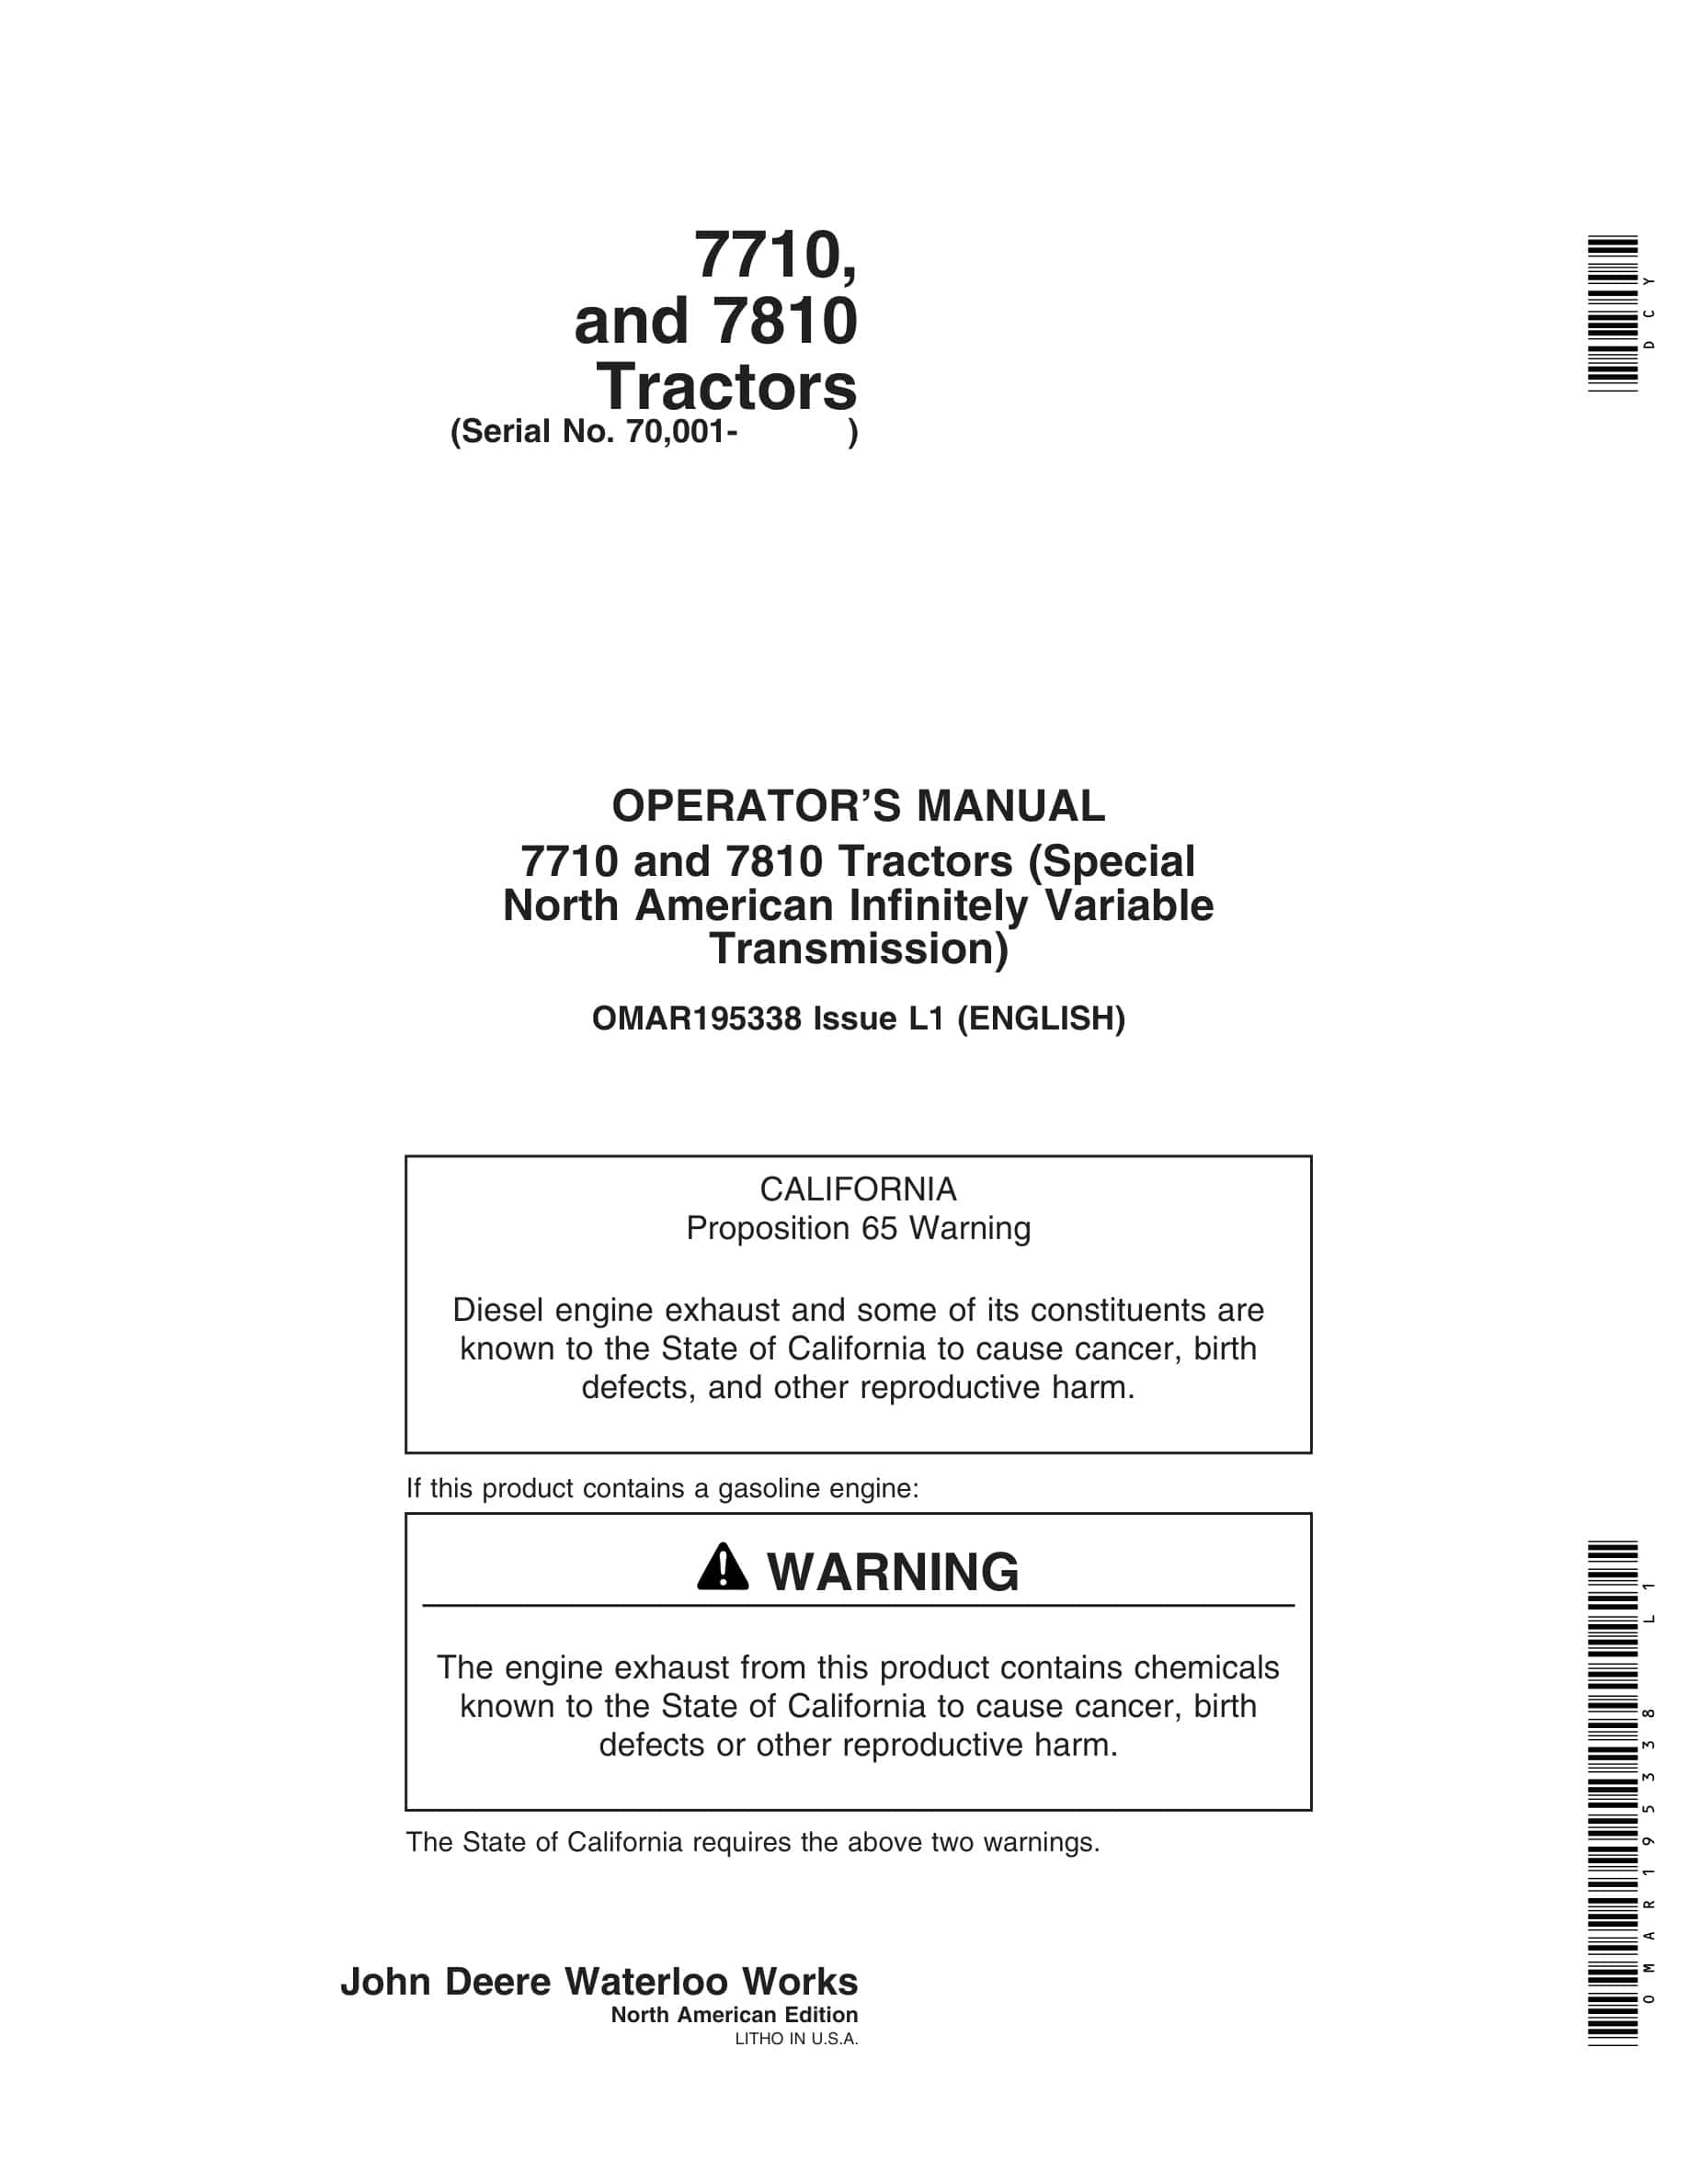 John Deere 7710 and 7810 Tractor Operator Manual OMAR195338-1